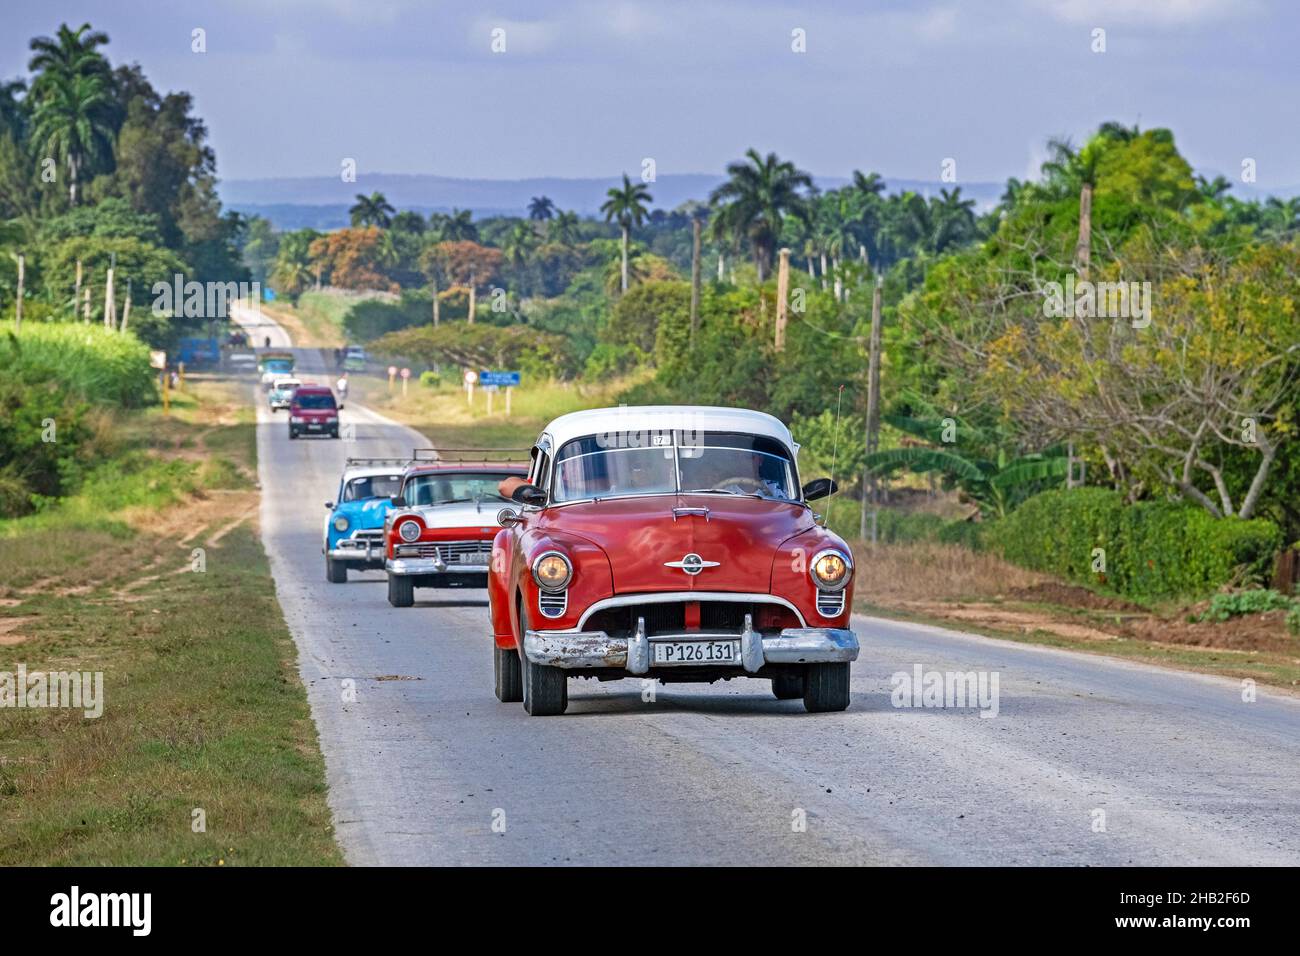 Voitures américaines classiques en voiture le long de la route centrale de Carretera / CC / Central Road, autoroute ouest-est dans la province de Sancti Spíritus sur l'île de Cuba Banque D'Images